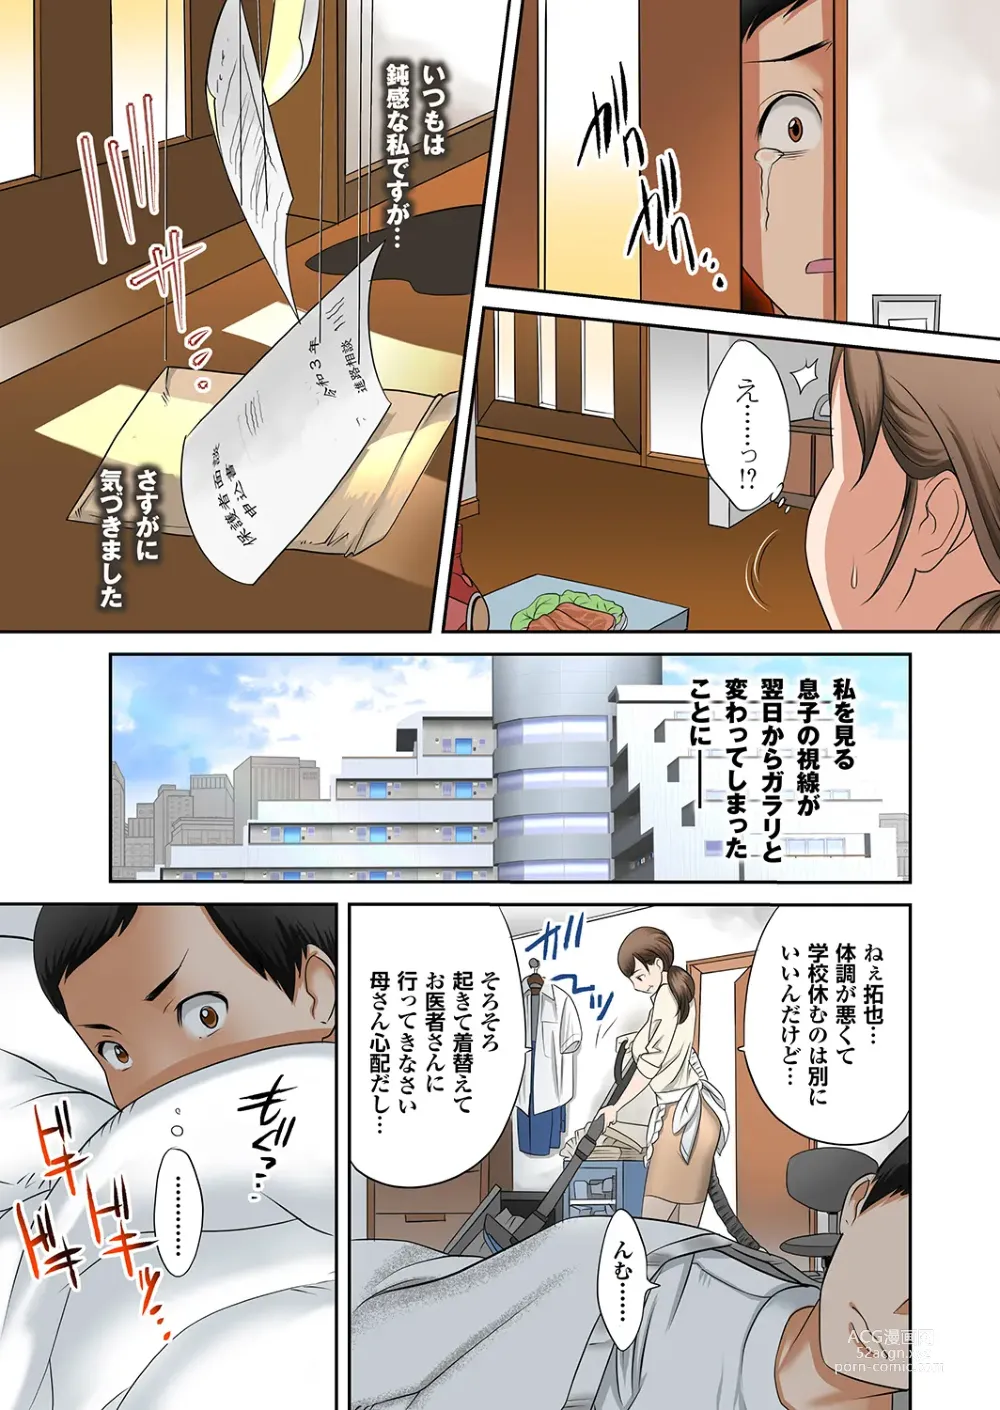 Page 16 of manga Boku no Kaa-san no Nikudorei-ka ga Tomaranai.